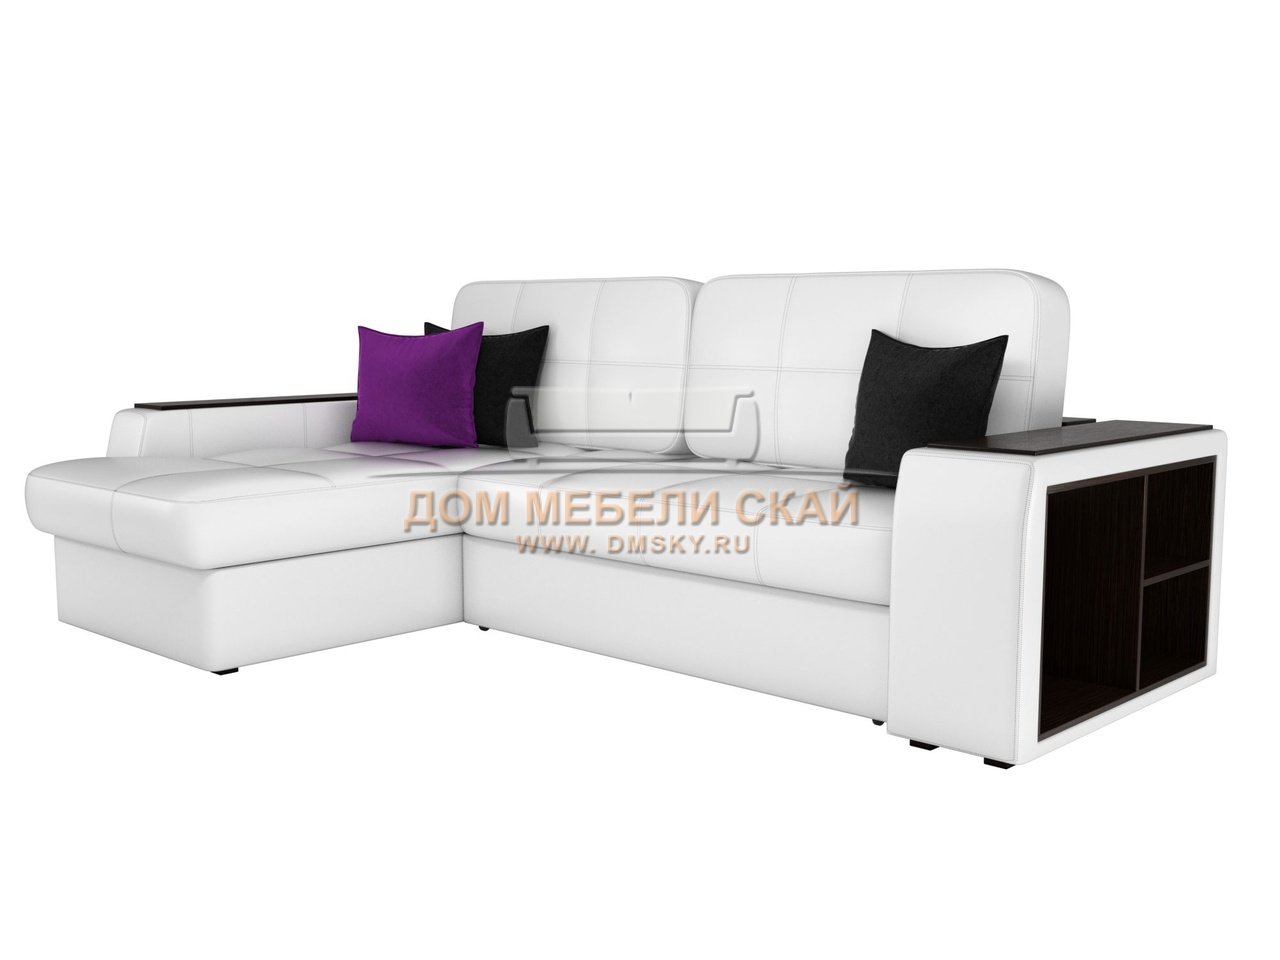 Угловой диван-кровать левый Брюссель, белый/экокожа - купить в Москвенедорого по цене 73 990 руб. (арт. B10025958)